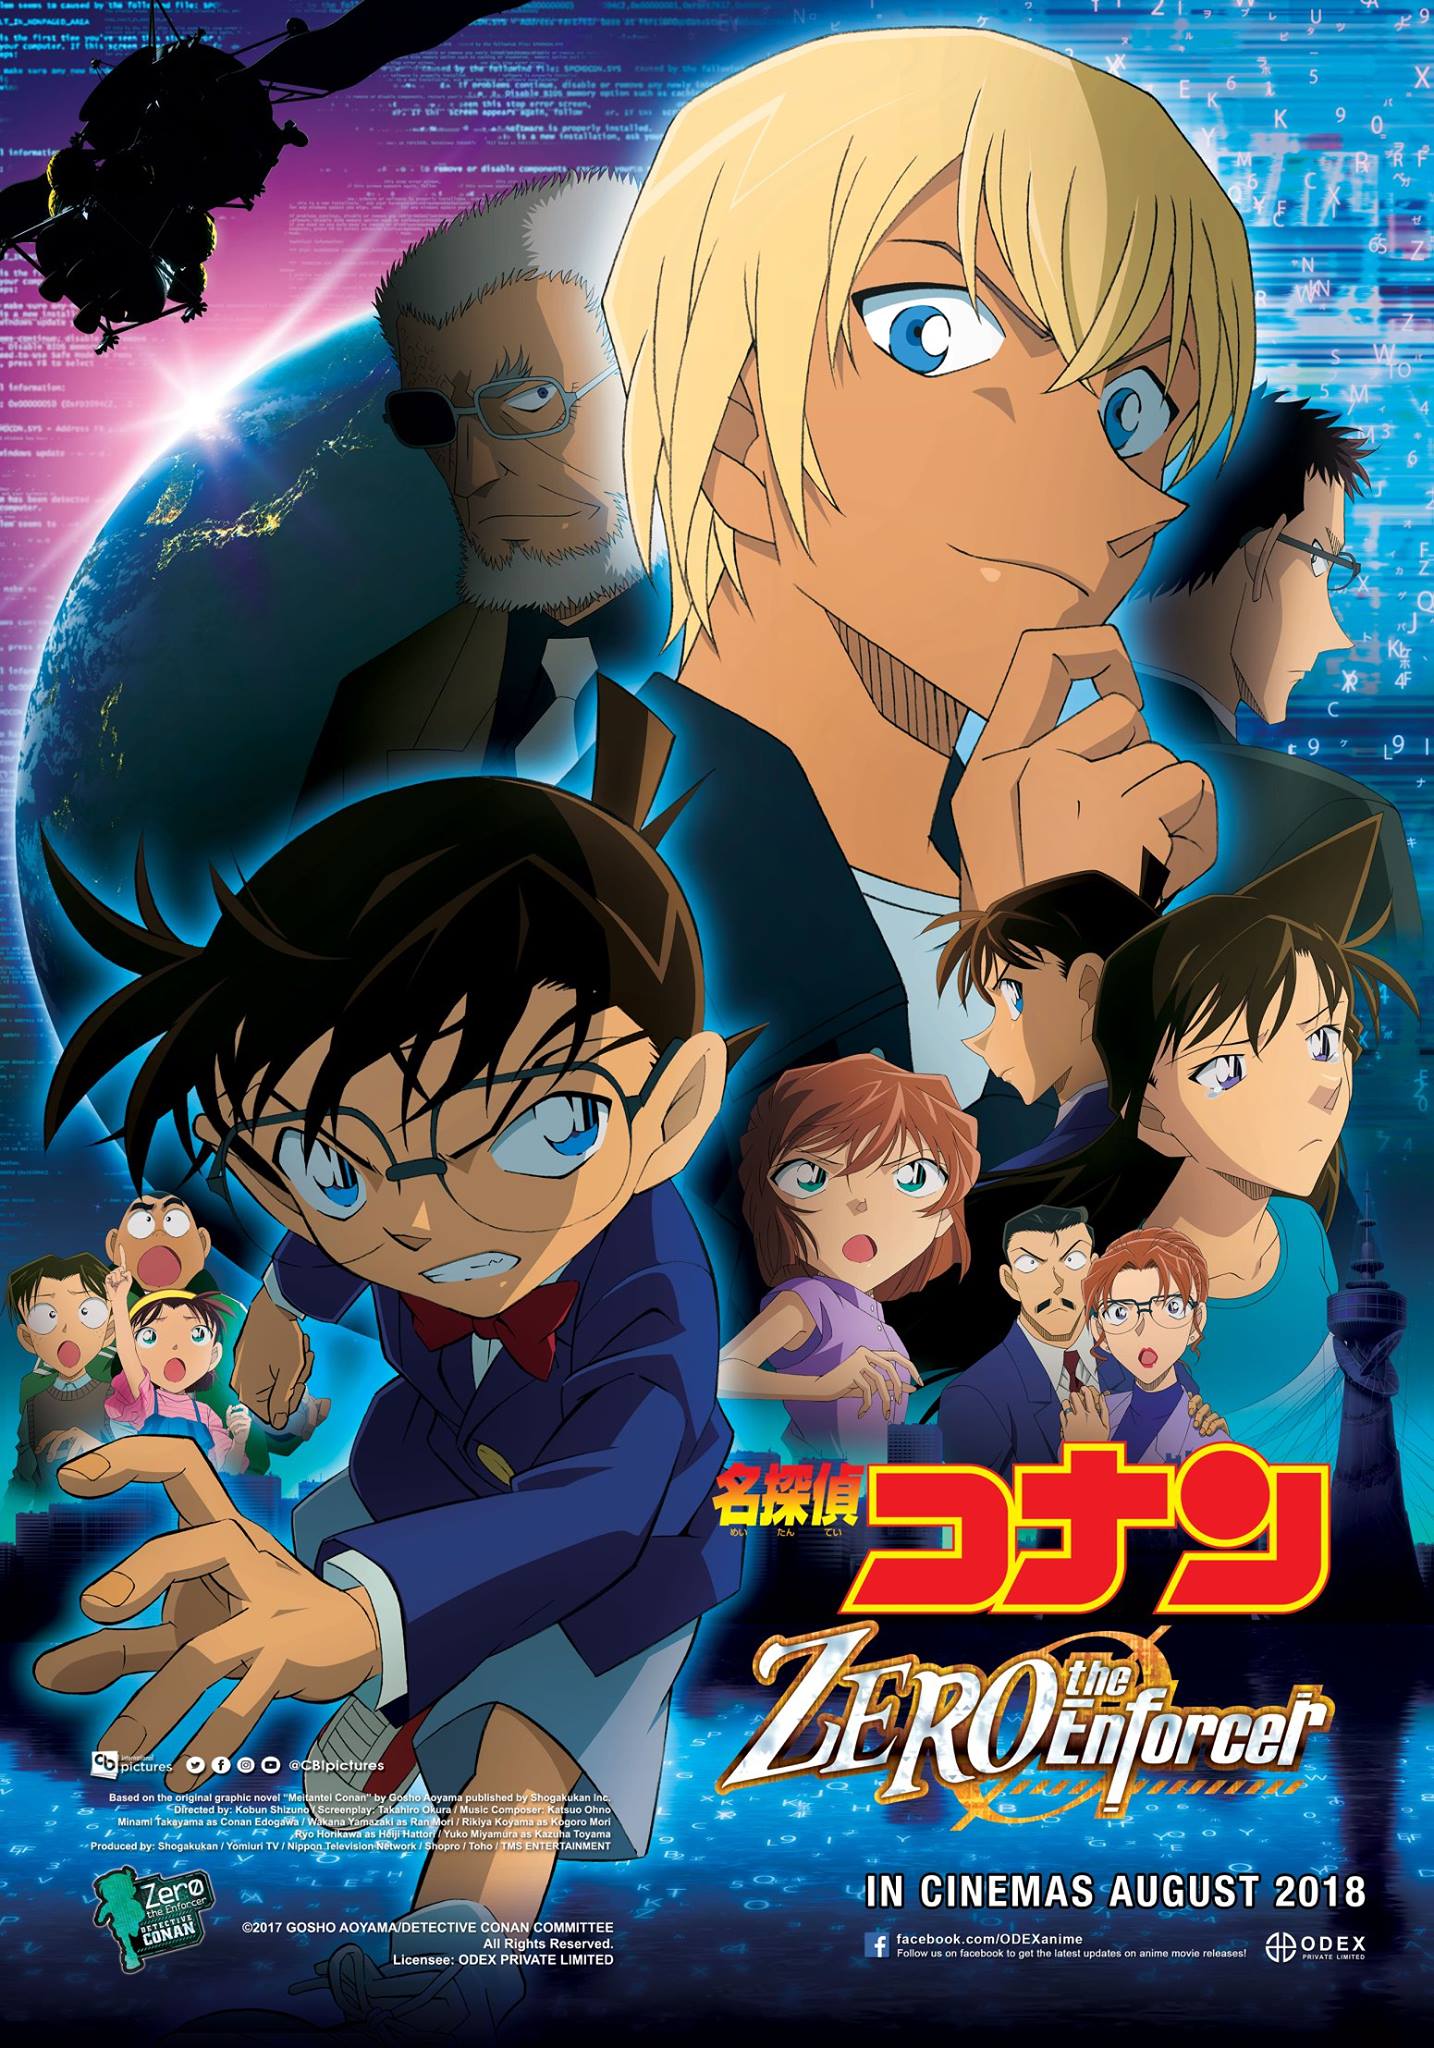 [REVIEW] Detective Conan Zero the Enforcer, Perlihatkan Satu Sisi Lain Tooru Amuro